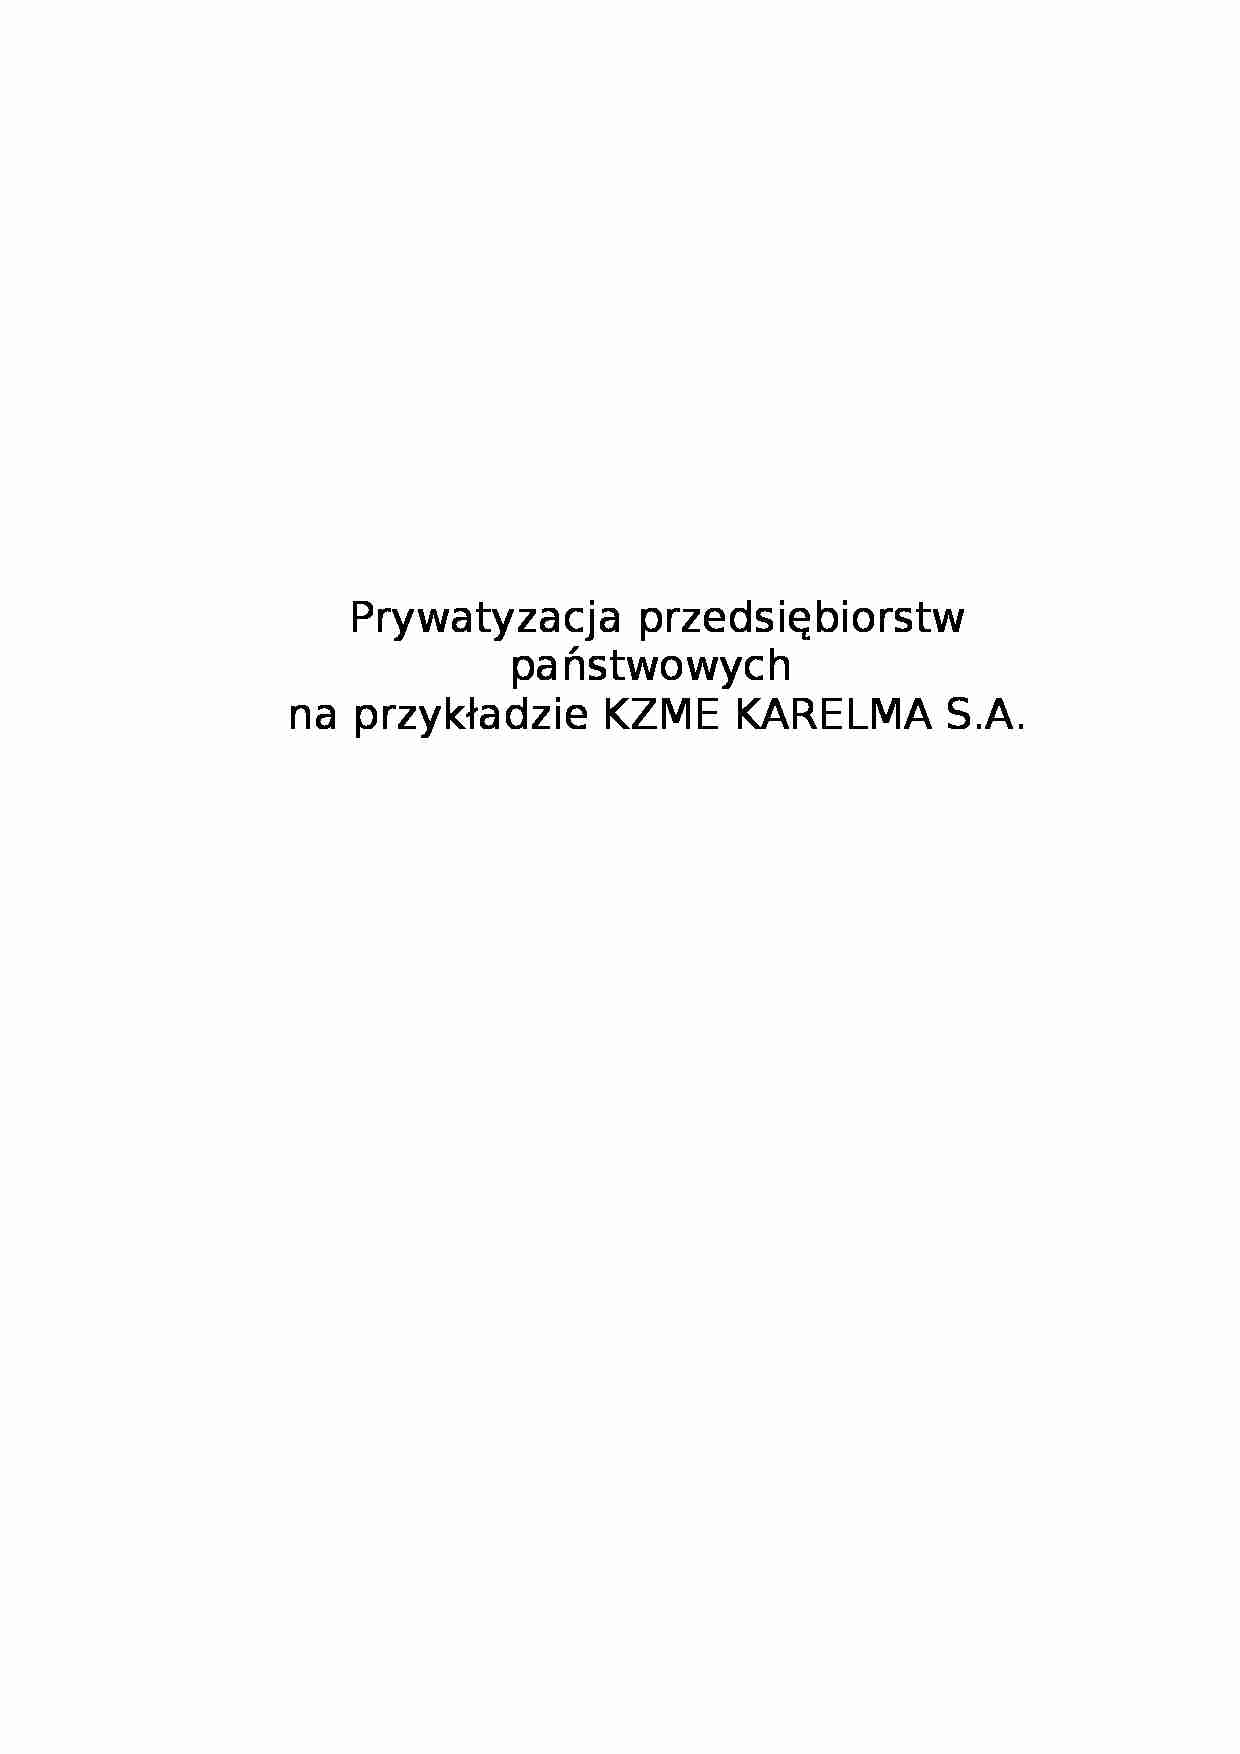 Prywatyzacja przedsiębiorstw państwowych na przykład KZME KARELMA S.A. - strona 1